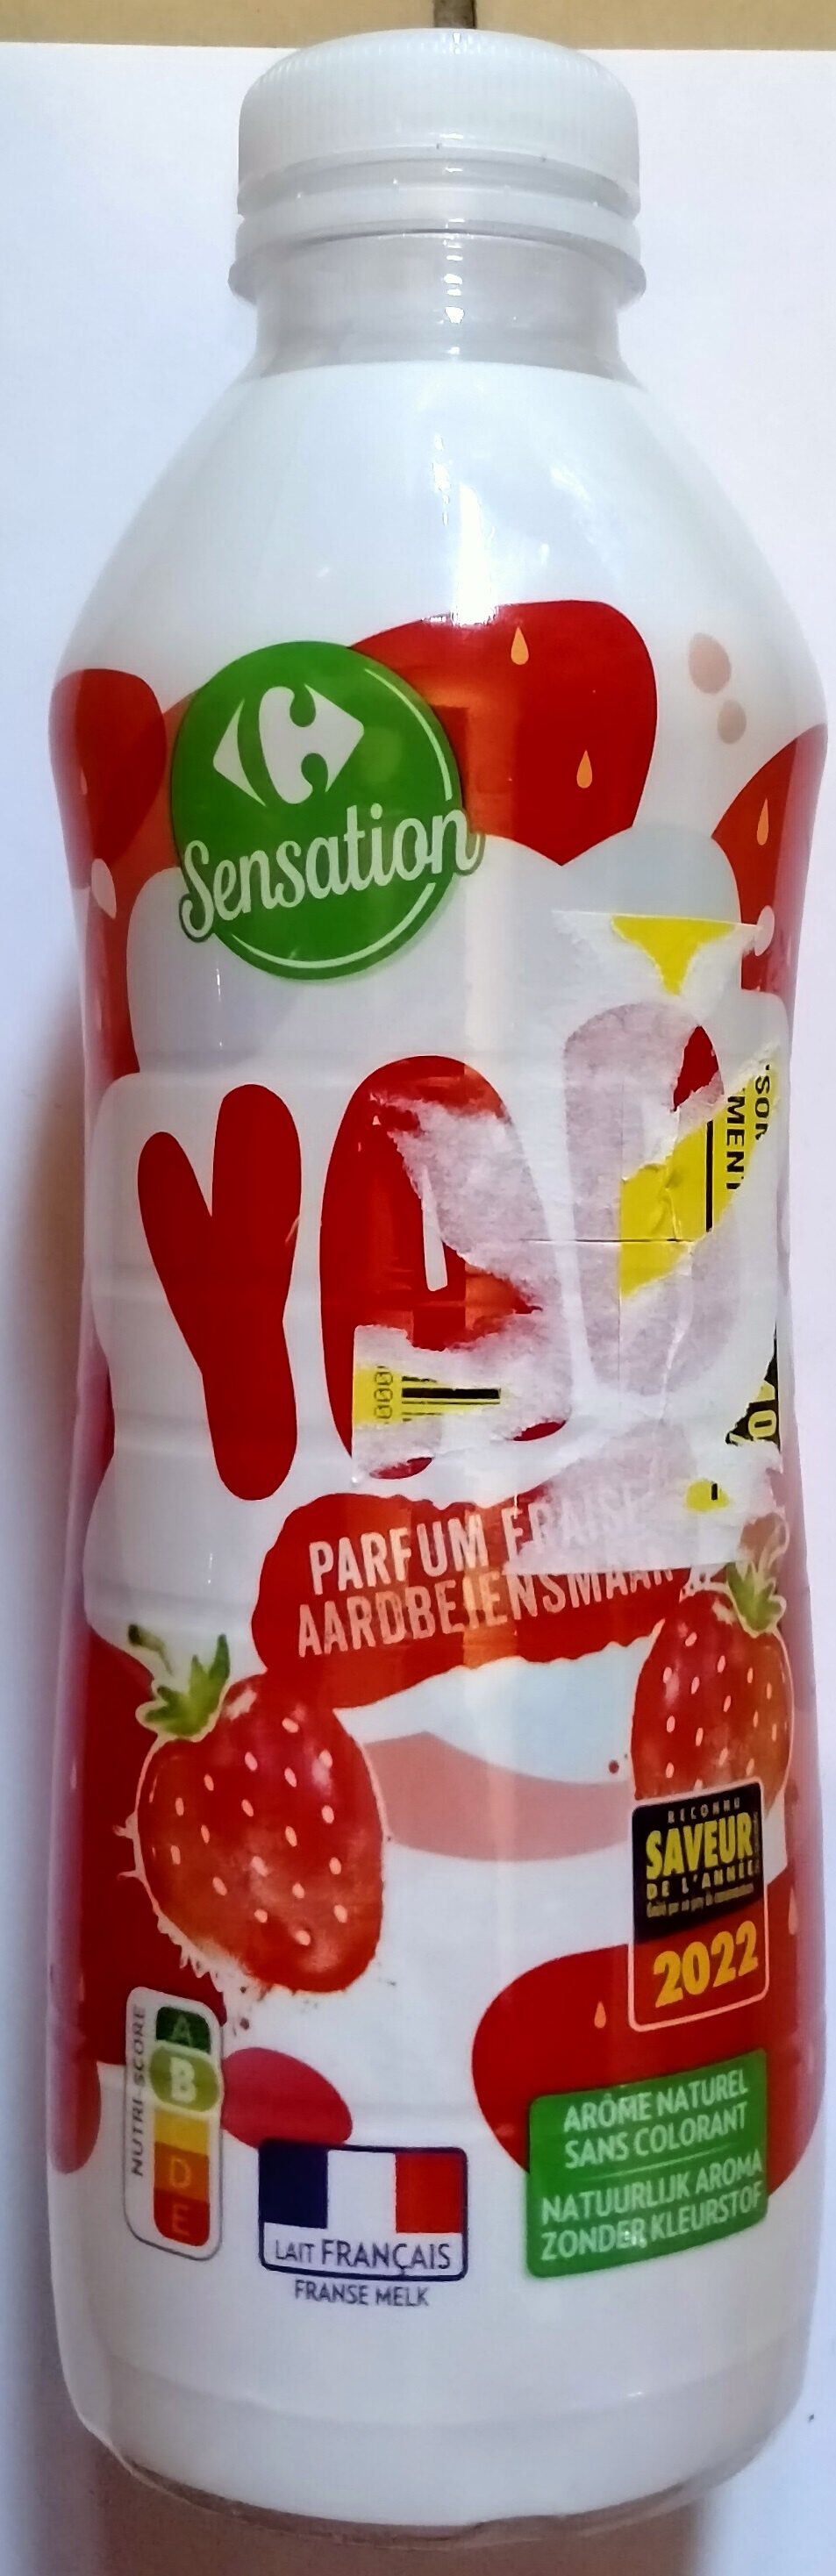 YAB parfum fraise - Produit